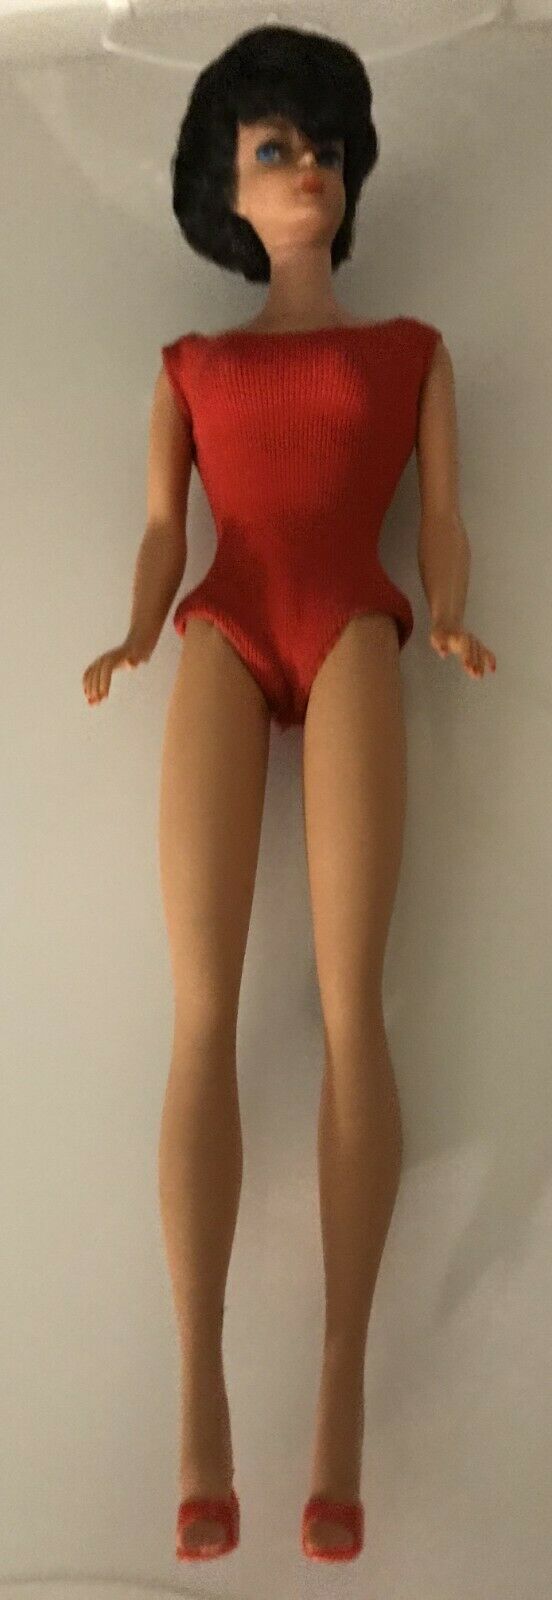 1962 Bubble Cut Barbie Doll original Red Swim Suit - PRE OWNED